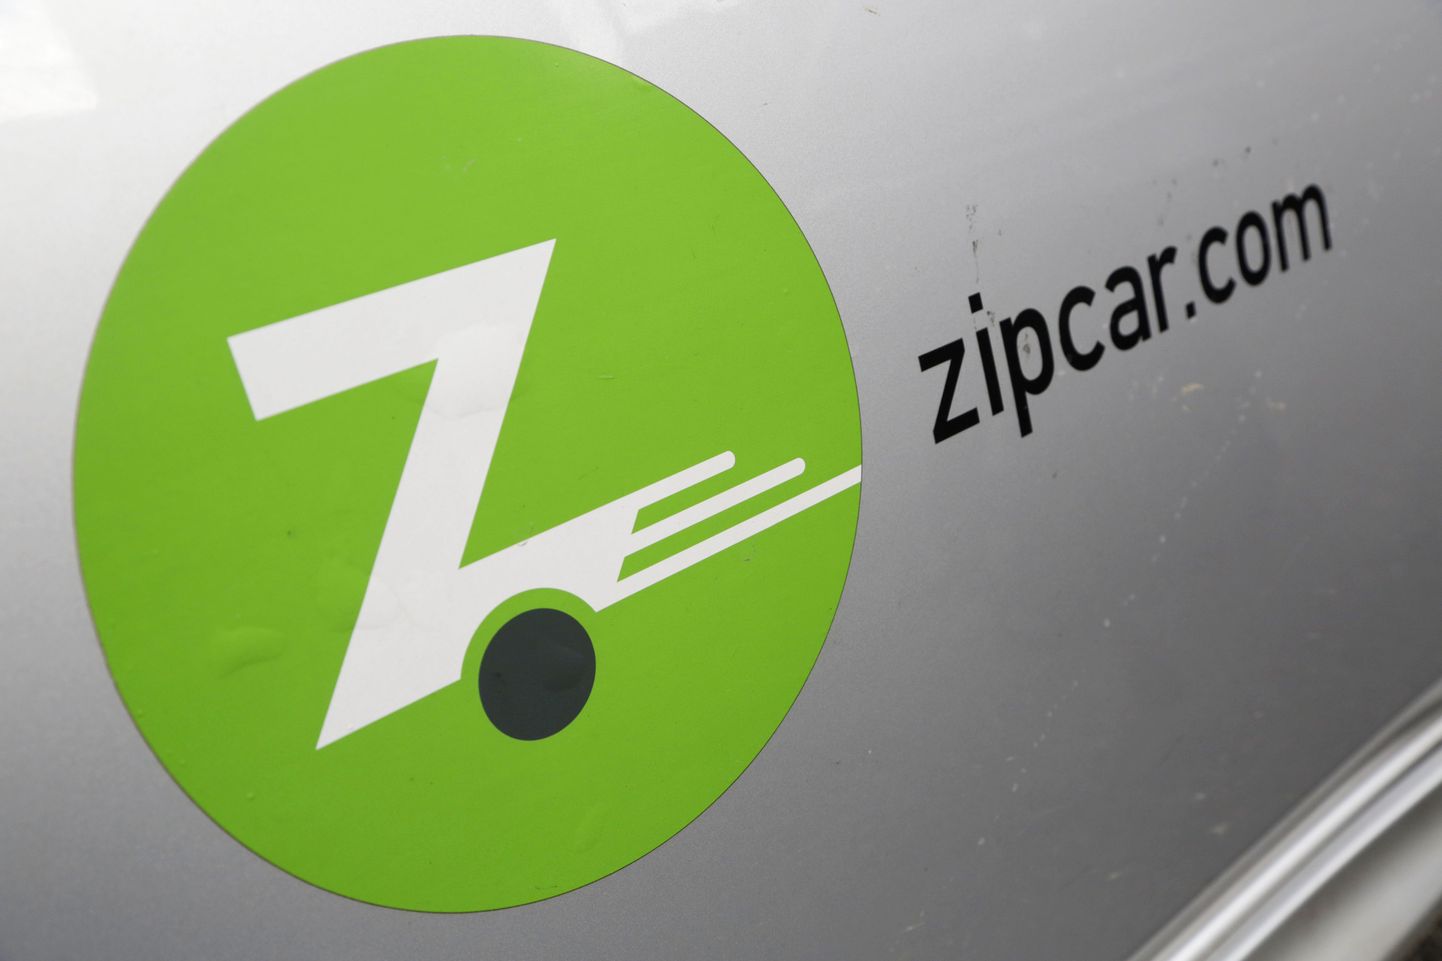 ZipCari logo rendiautol.